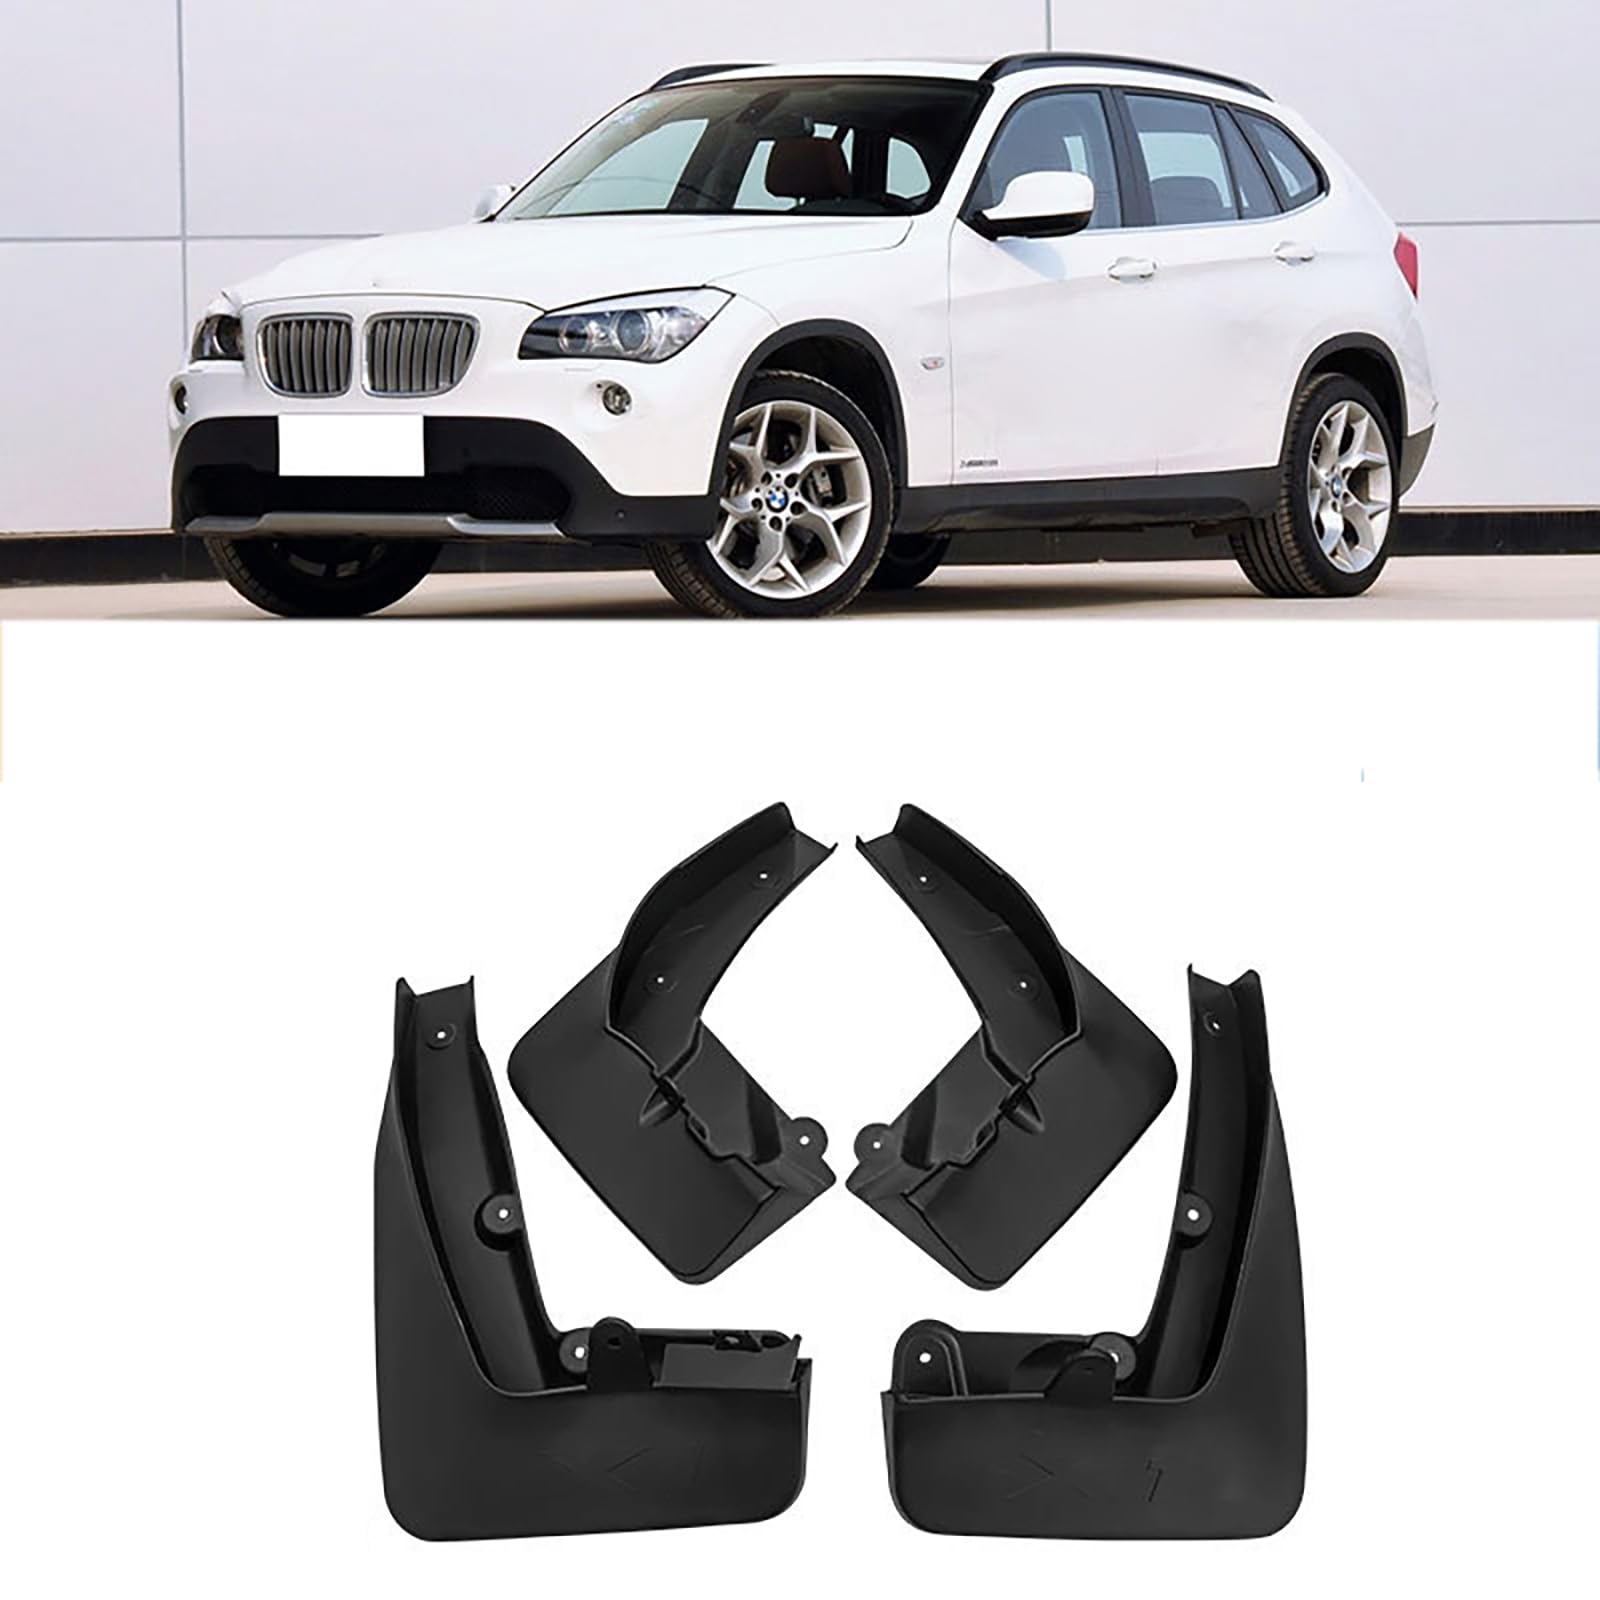 Kompatibel mit BMW X1 E84 2010-2015, 4 Stück Autokotflügel, Spritzschutz, Schmutzfänger, Schutzbleche gegen Sand von YPSBBHD